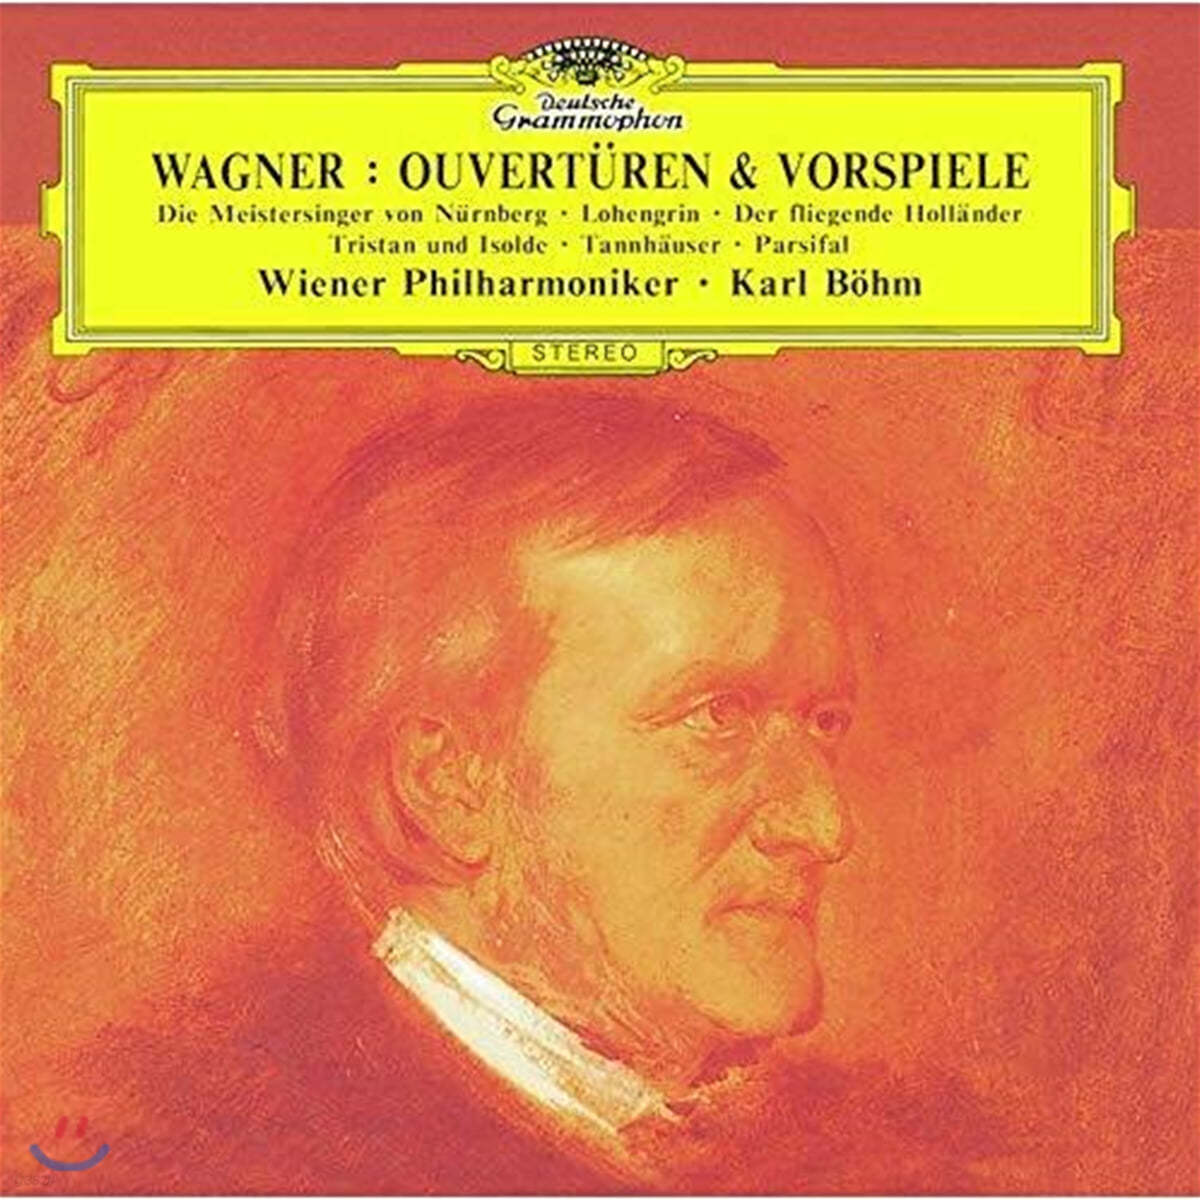 Karl Bohm 바그너: 서곡과 전주곡 (Wagner: Overtures & Preludes)